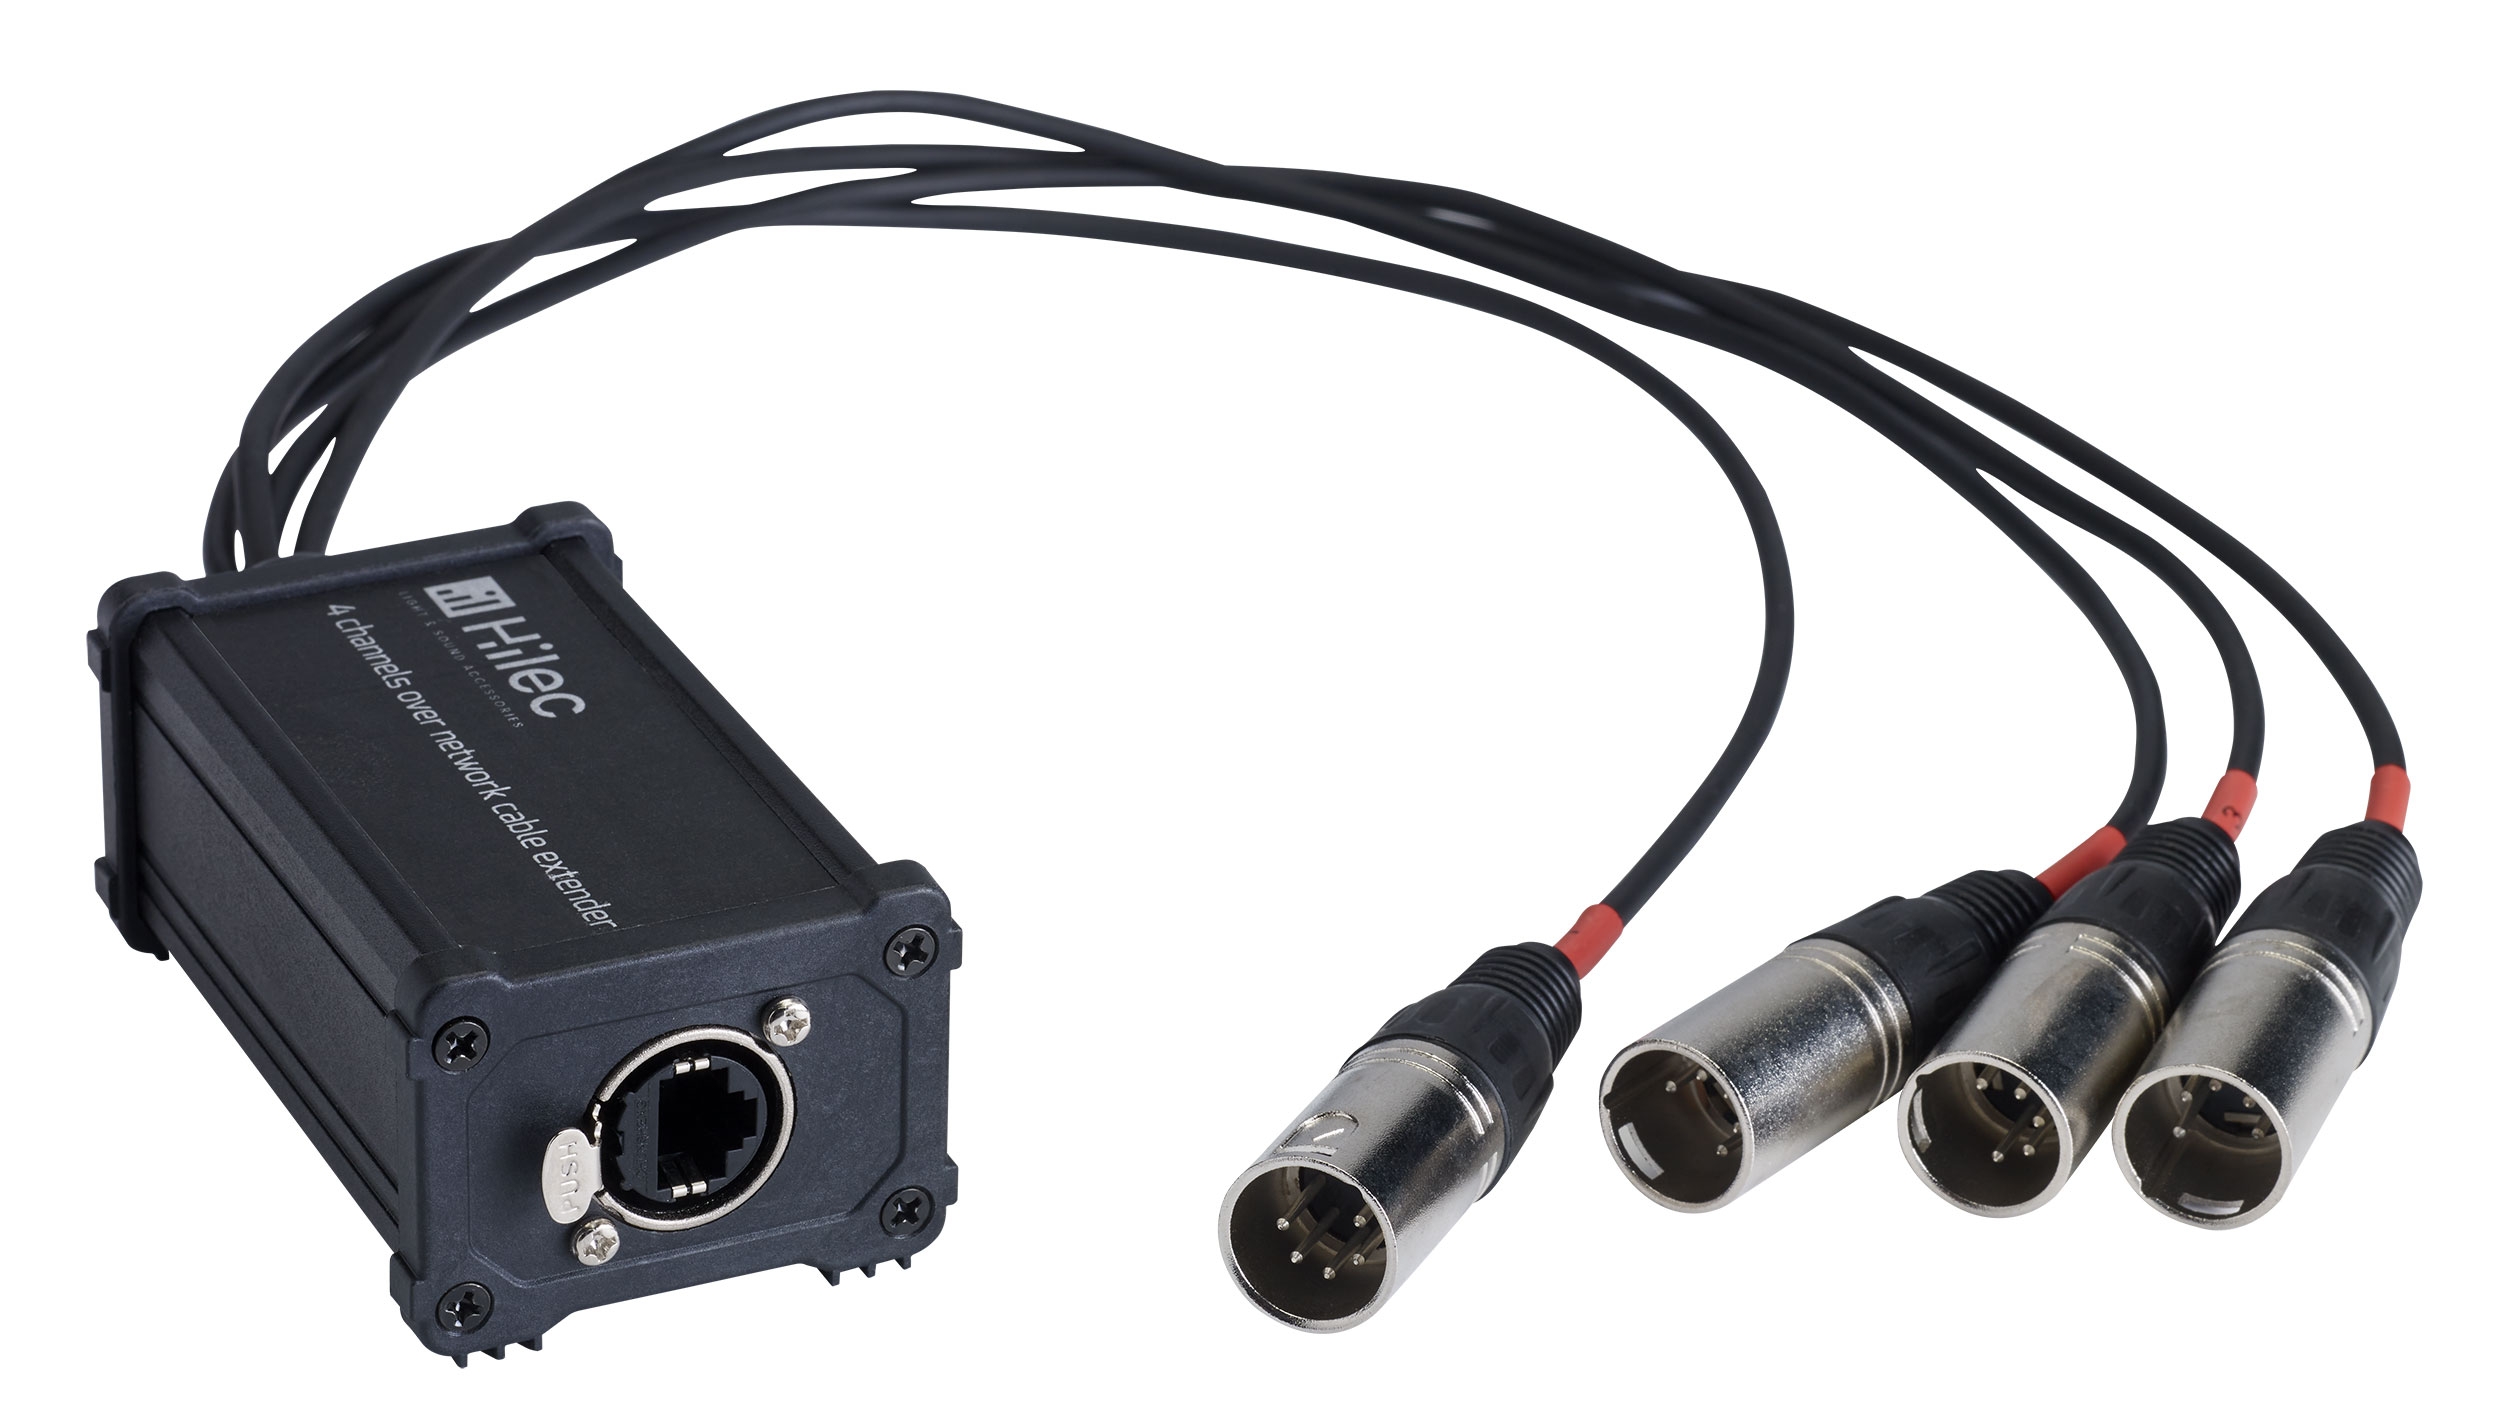 RJ45 / XLR5M adapterdoos voor audio of DMX signaal